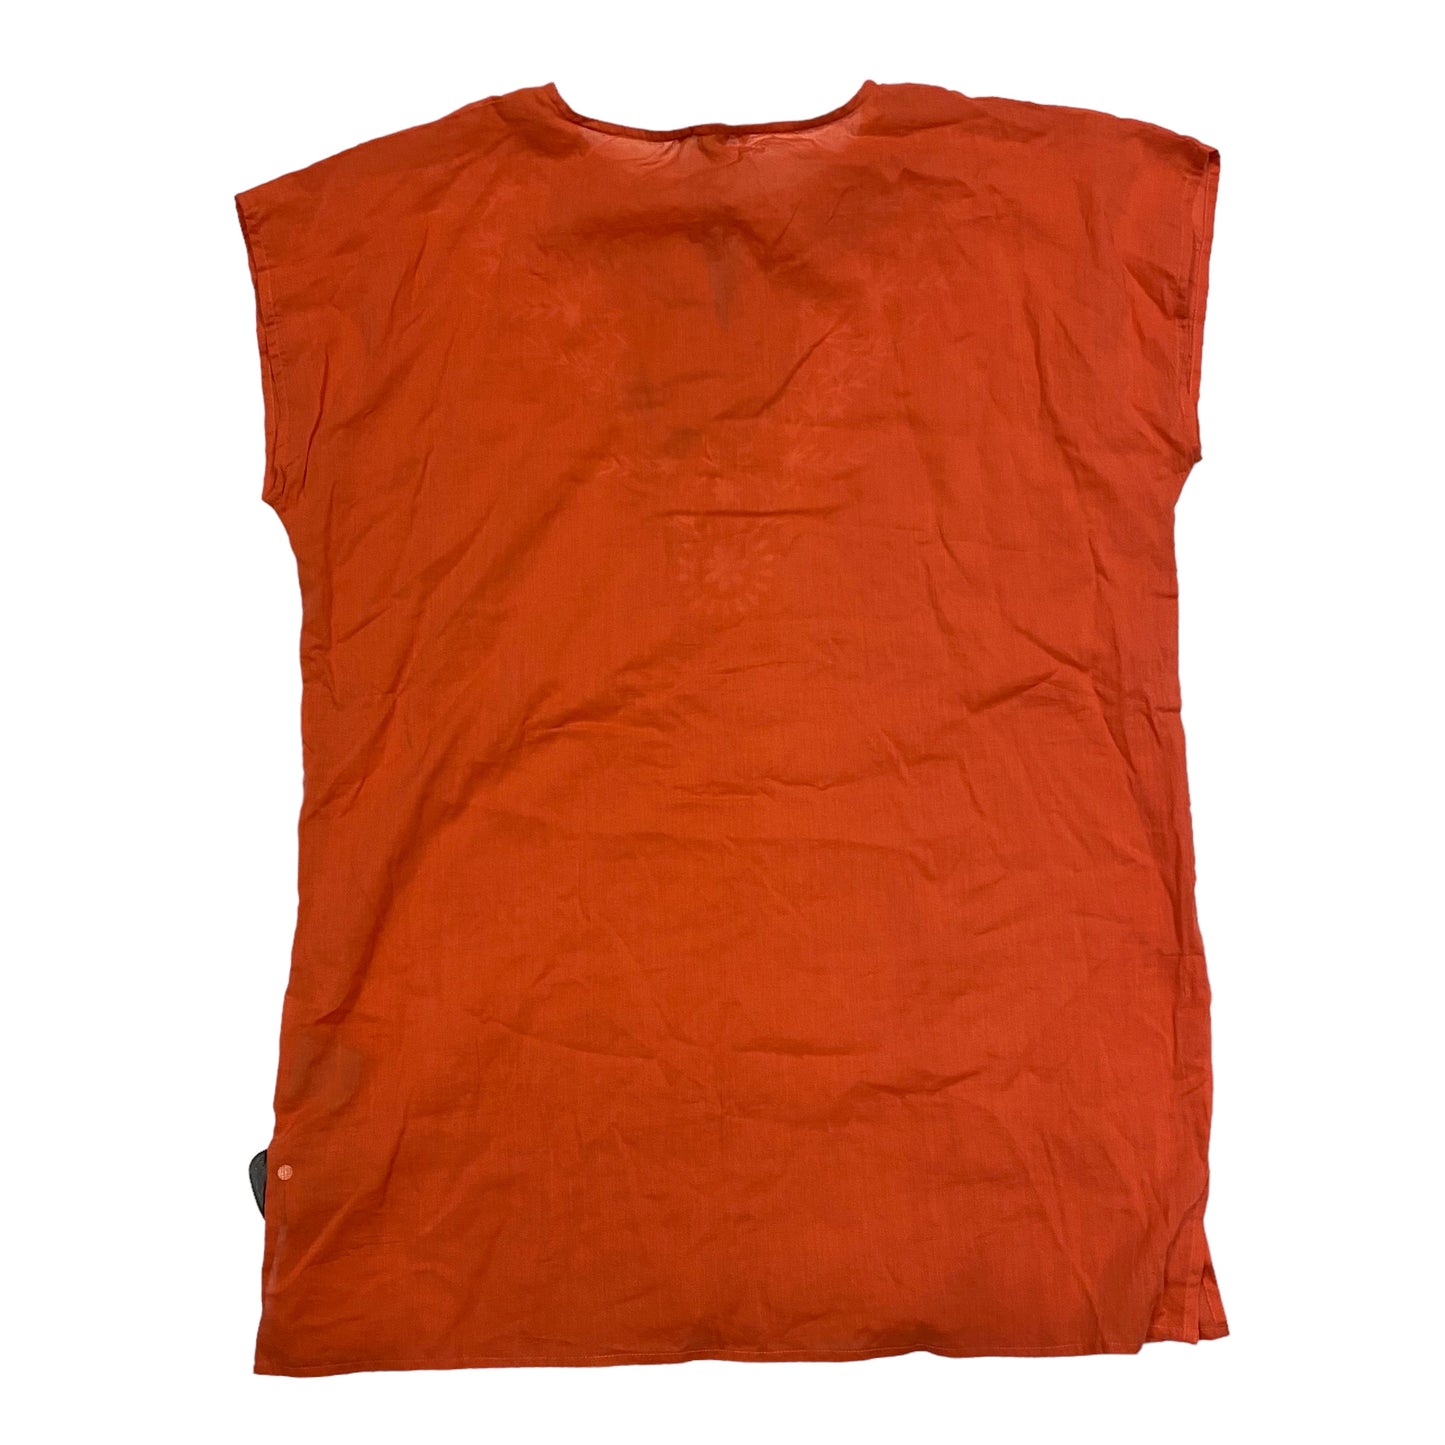 Orange Top Short Sleeve Cmc, Size Os